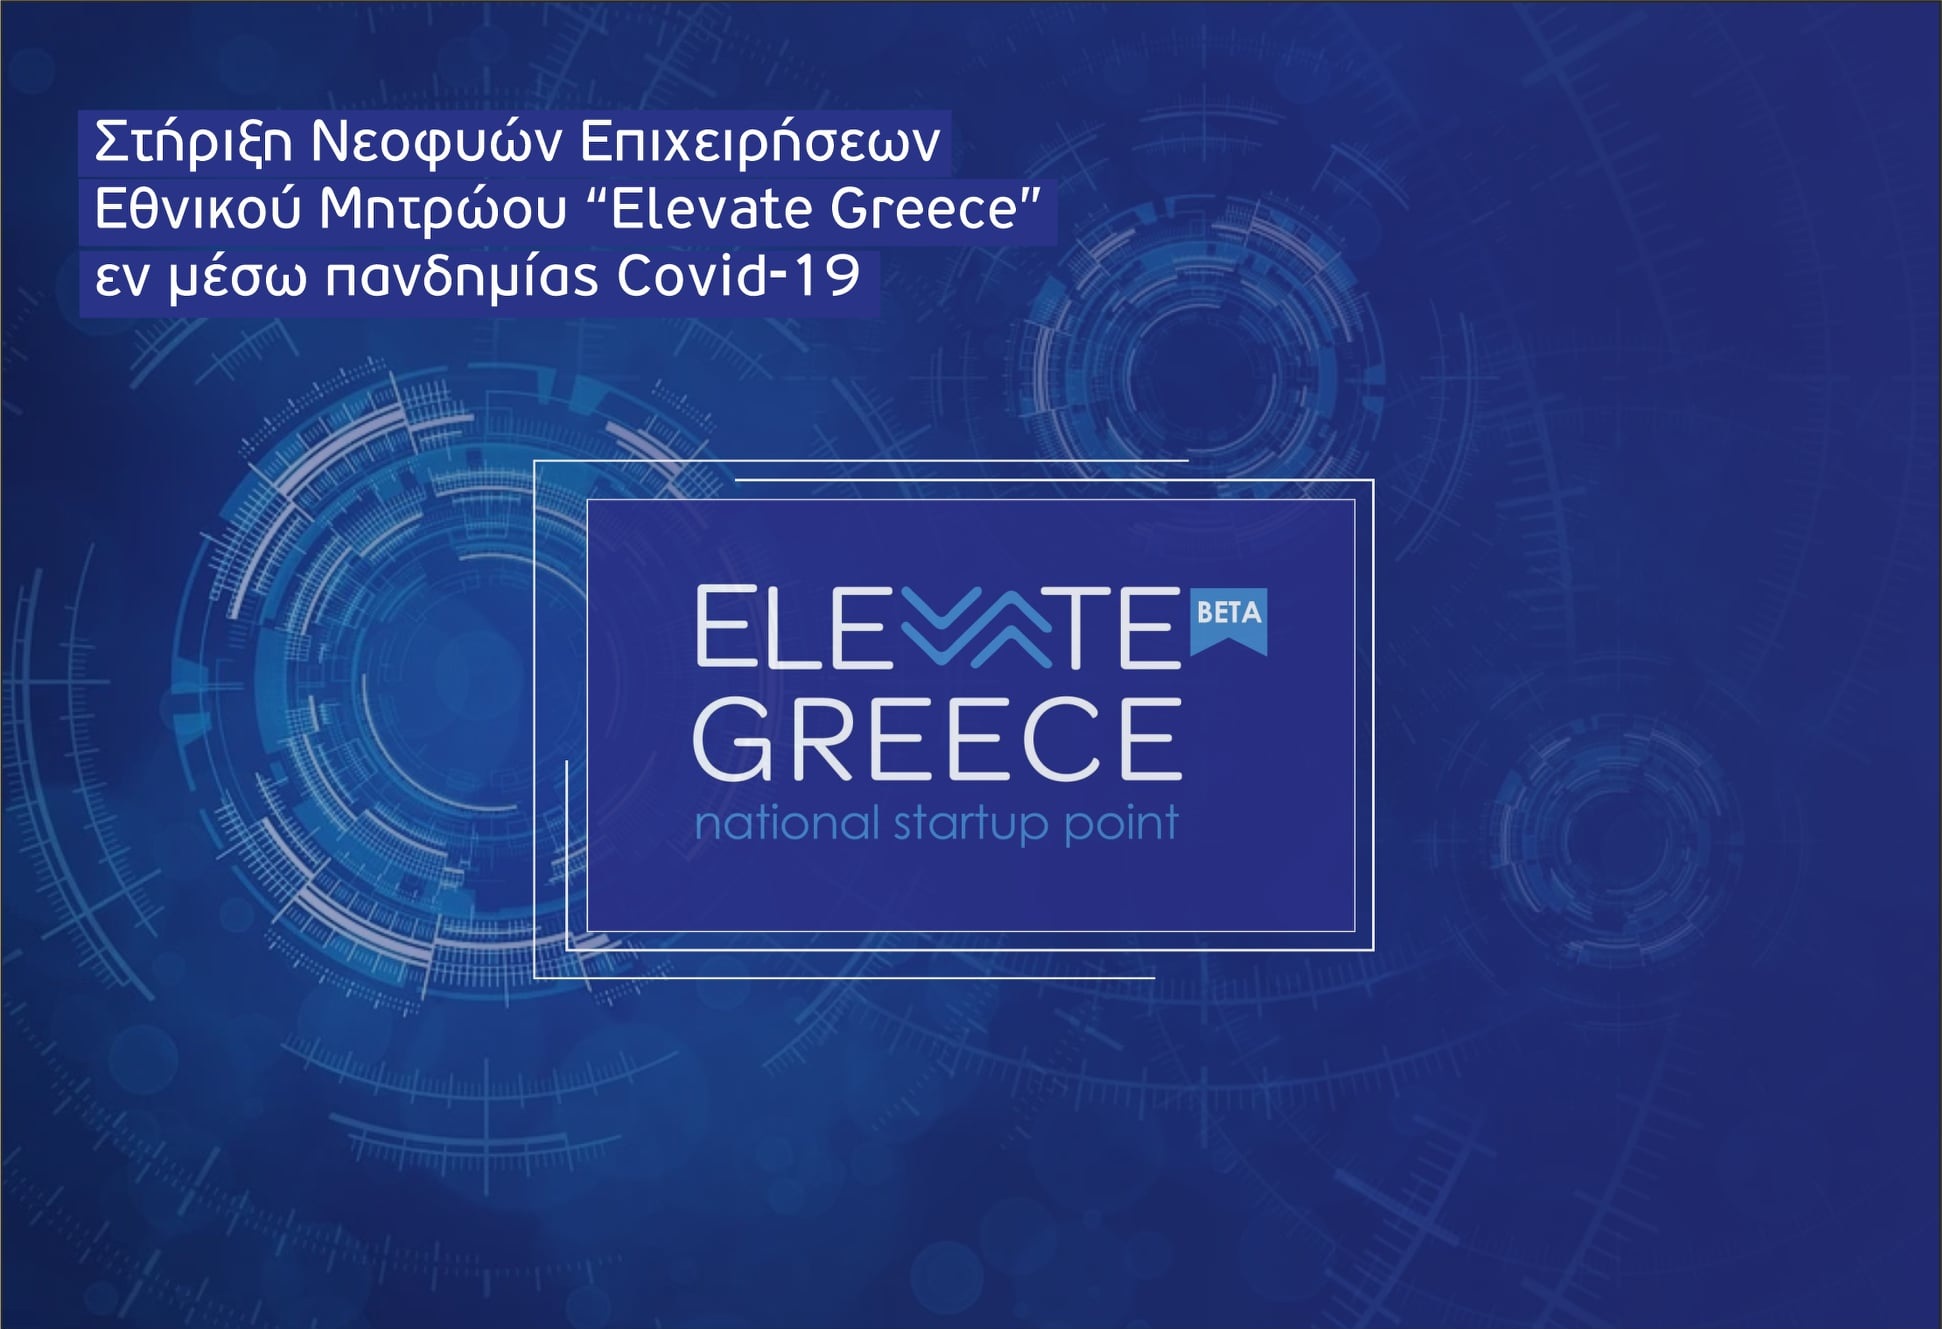 Business Support National Register of Start-ups - Vouzounerakis